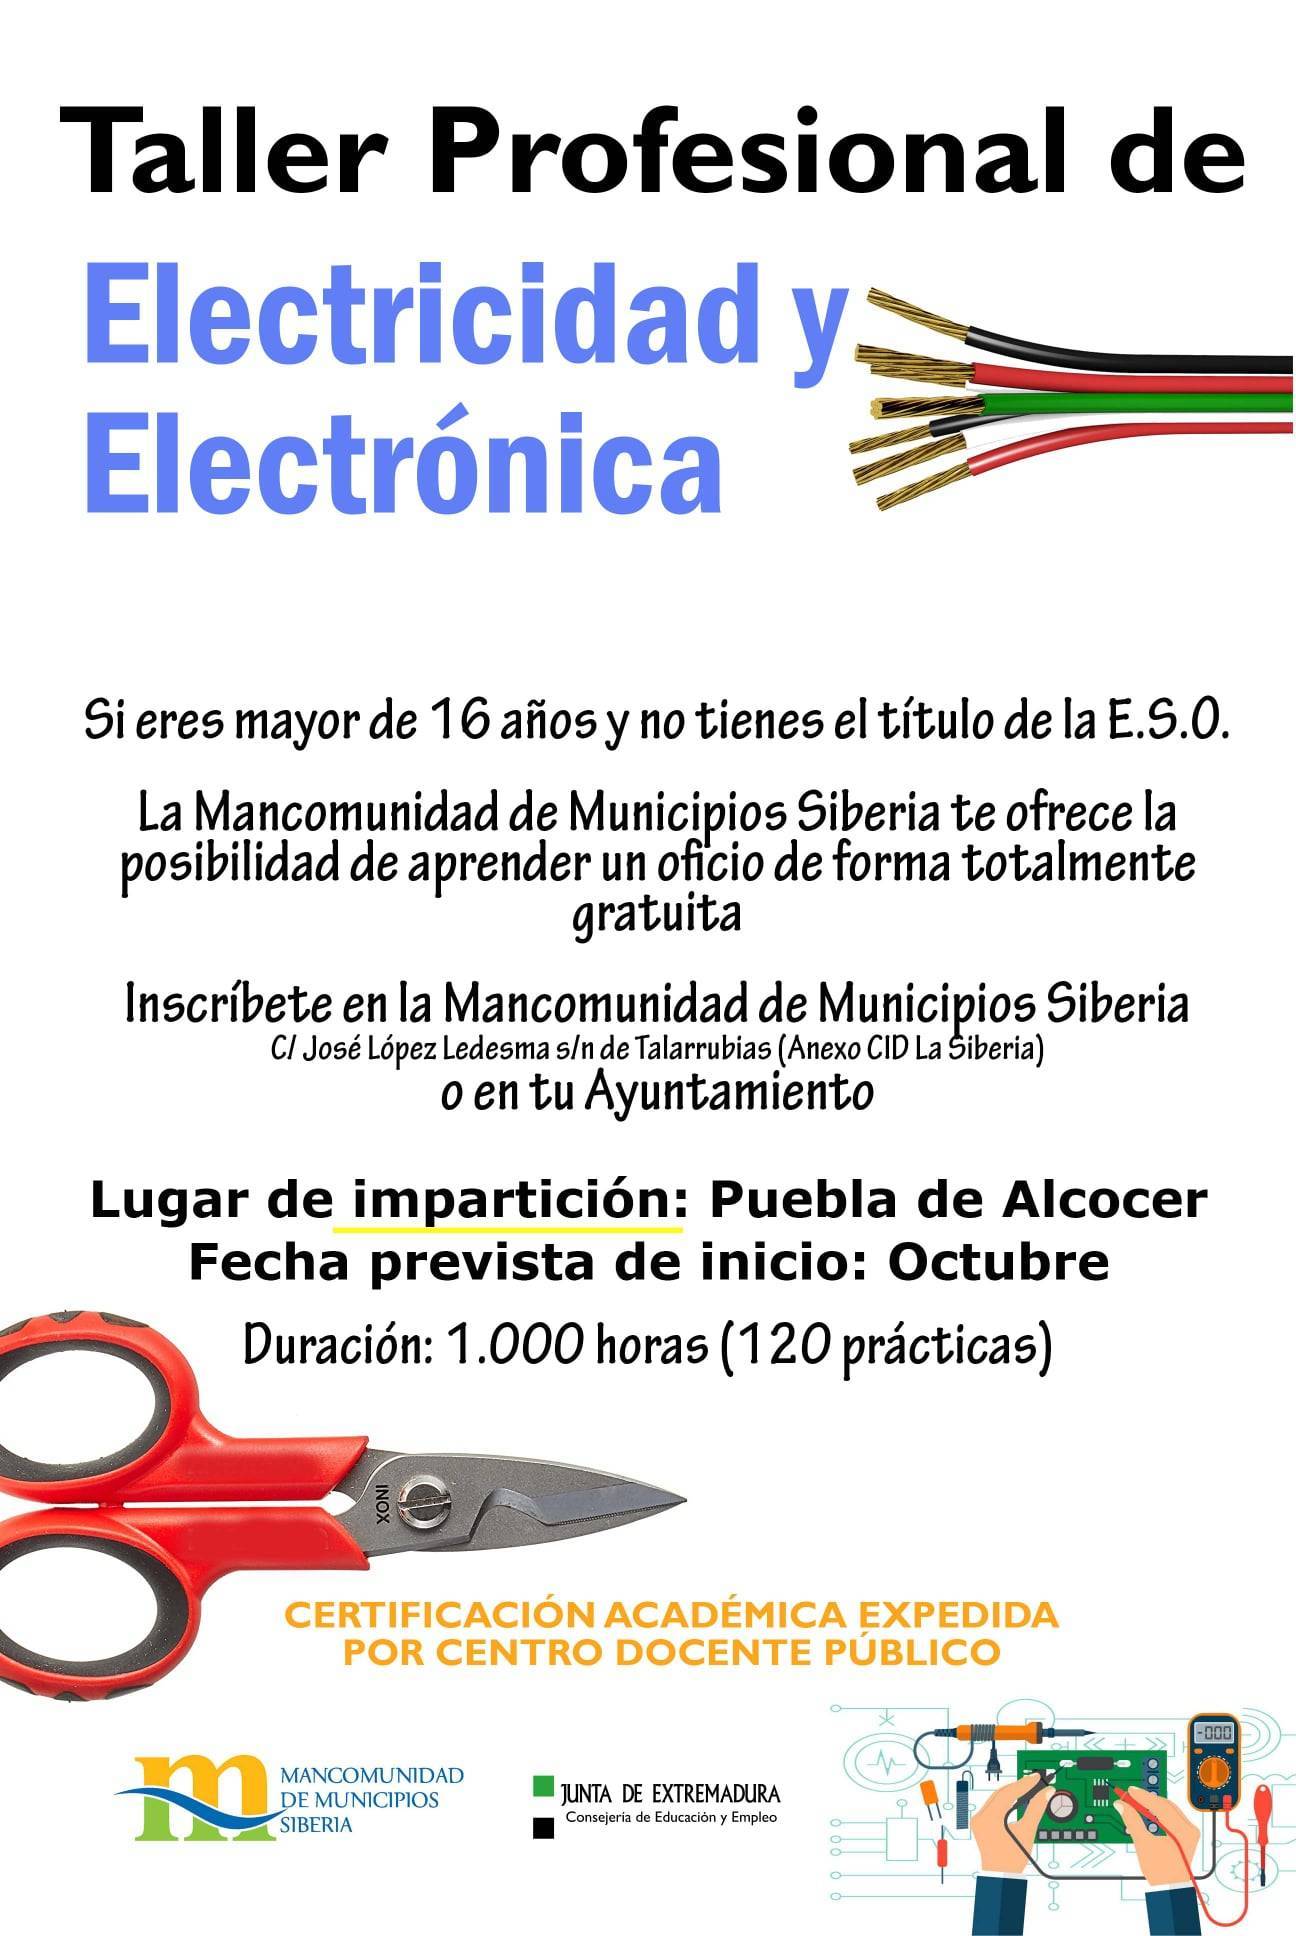 Taller profesional de electricidad y electrónica (2021) - Puebla de Alcocer (Badajoz)